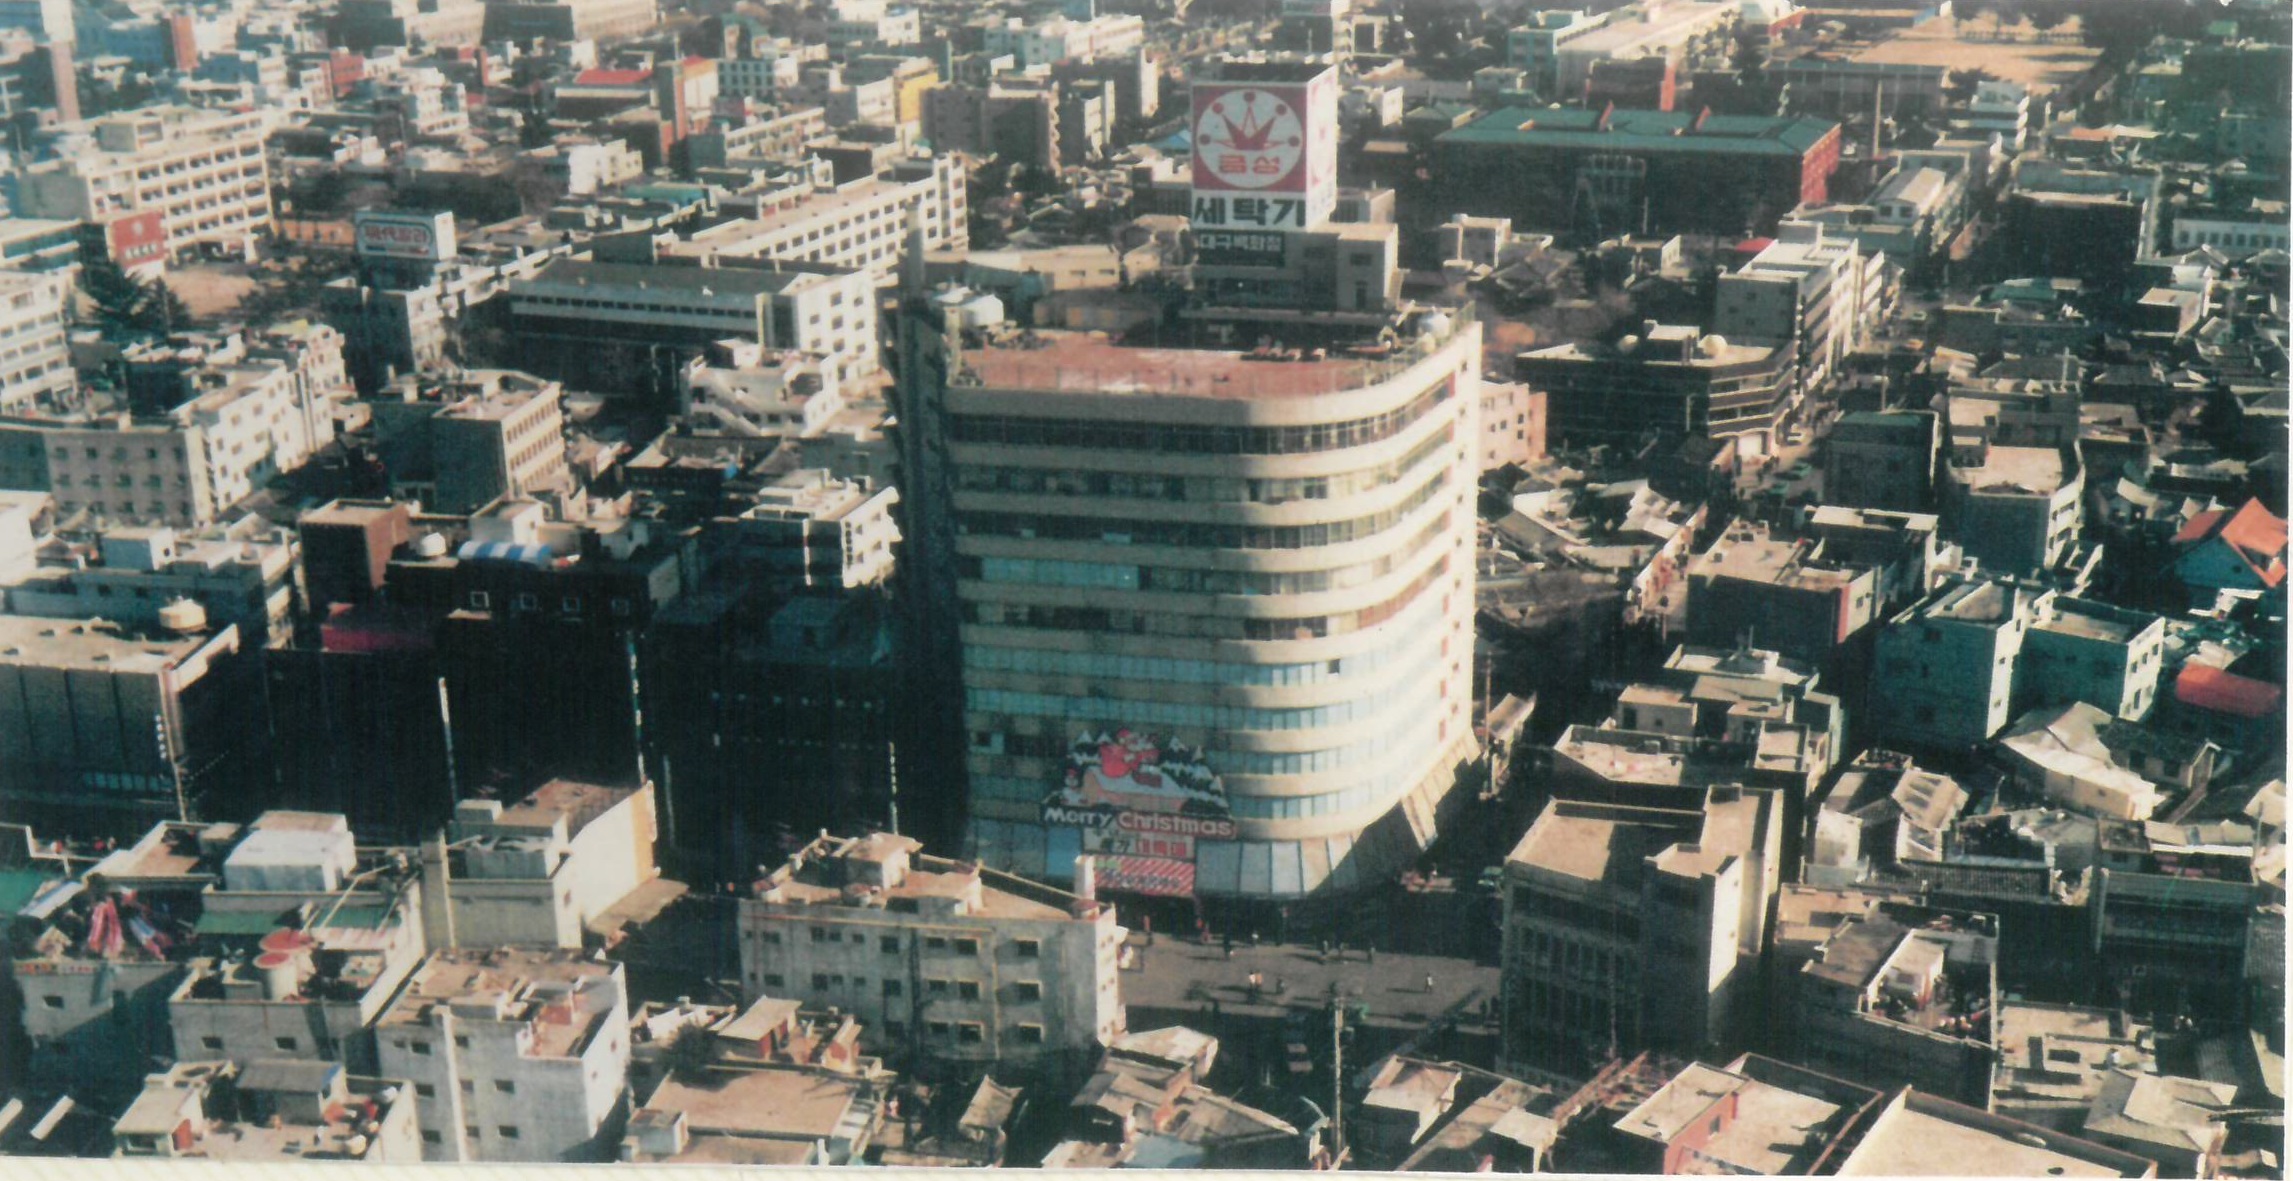 과거 동성로 모습. 우뚝 솟은 대백 본점 건물 주변을 저층 건물이 둘러싸고 있다. (대구백화점 제공)